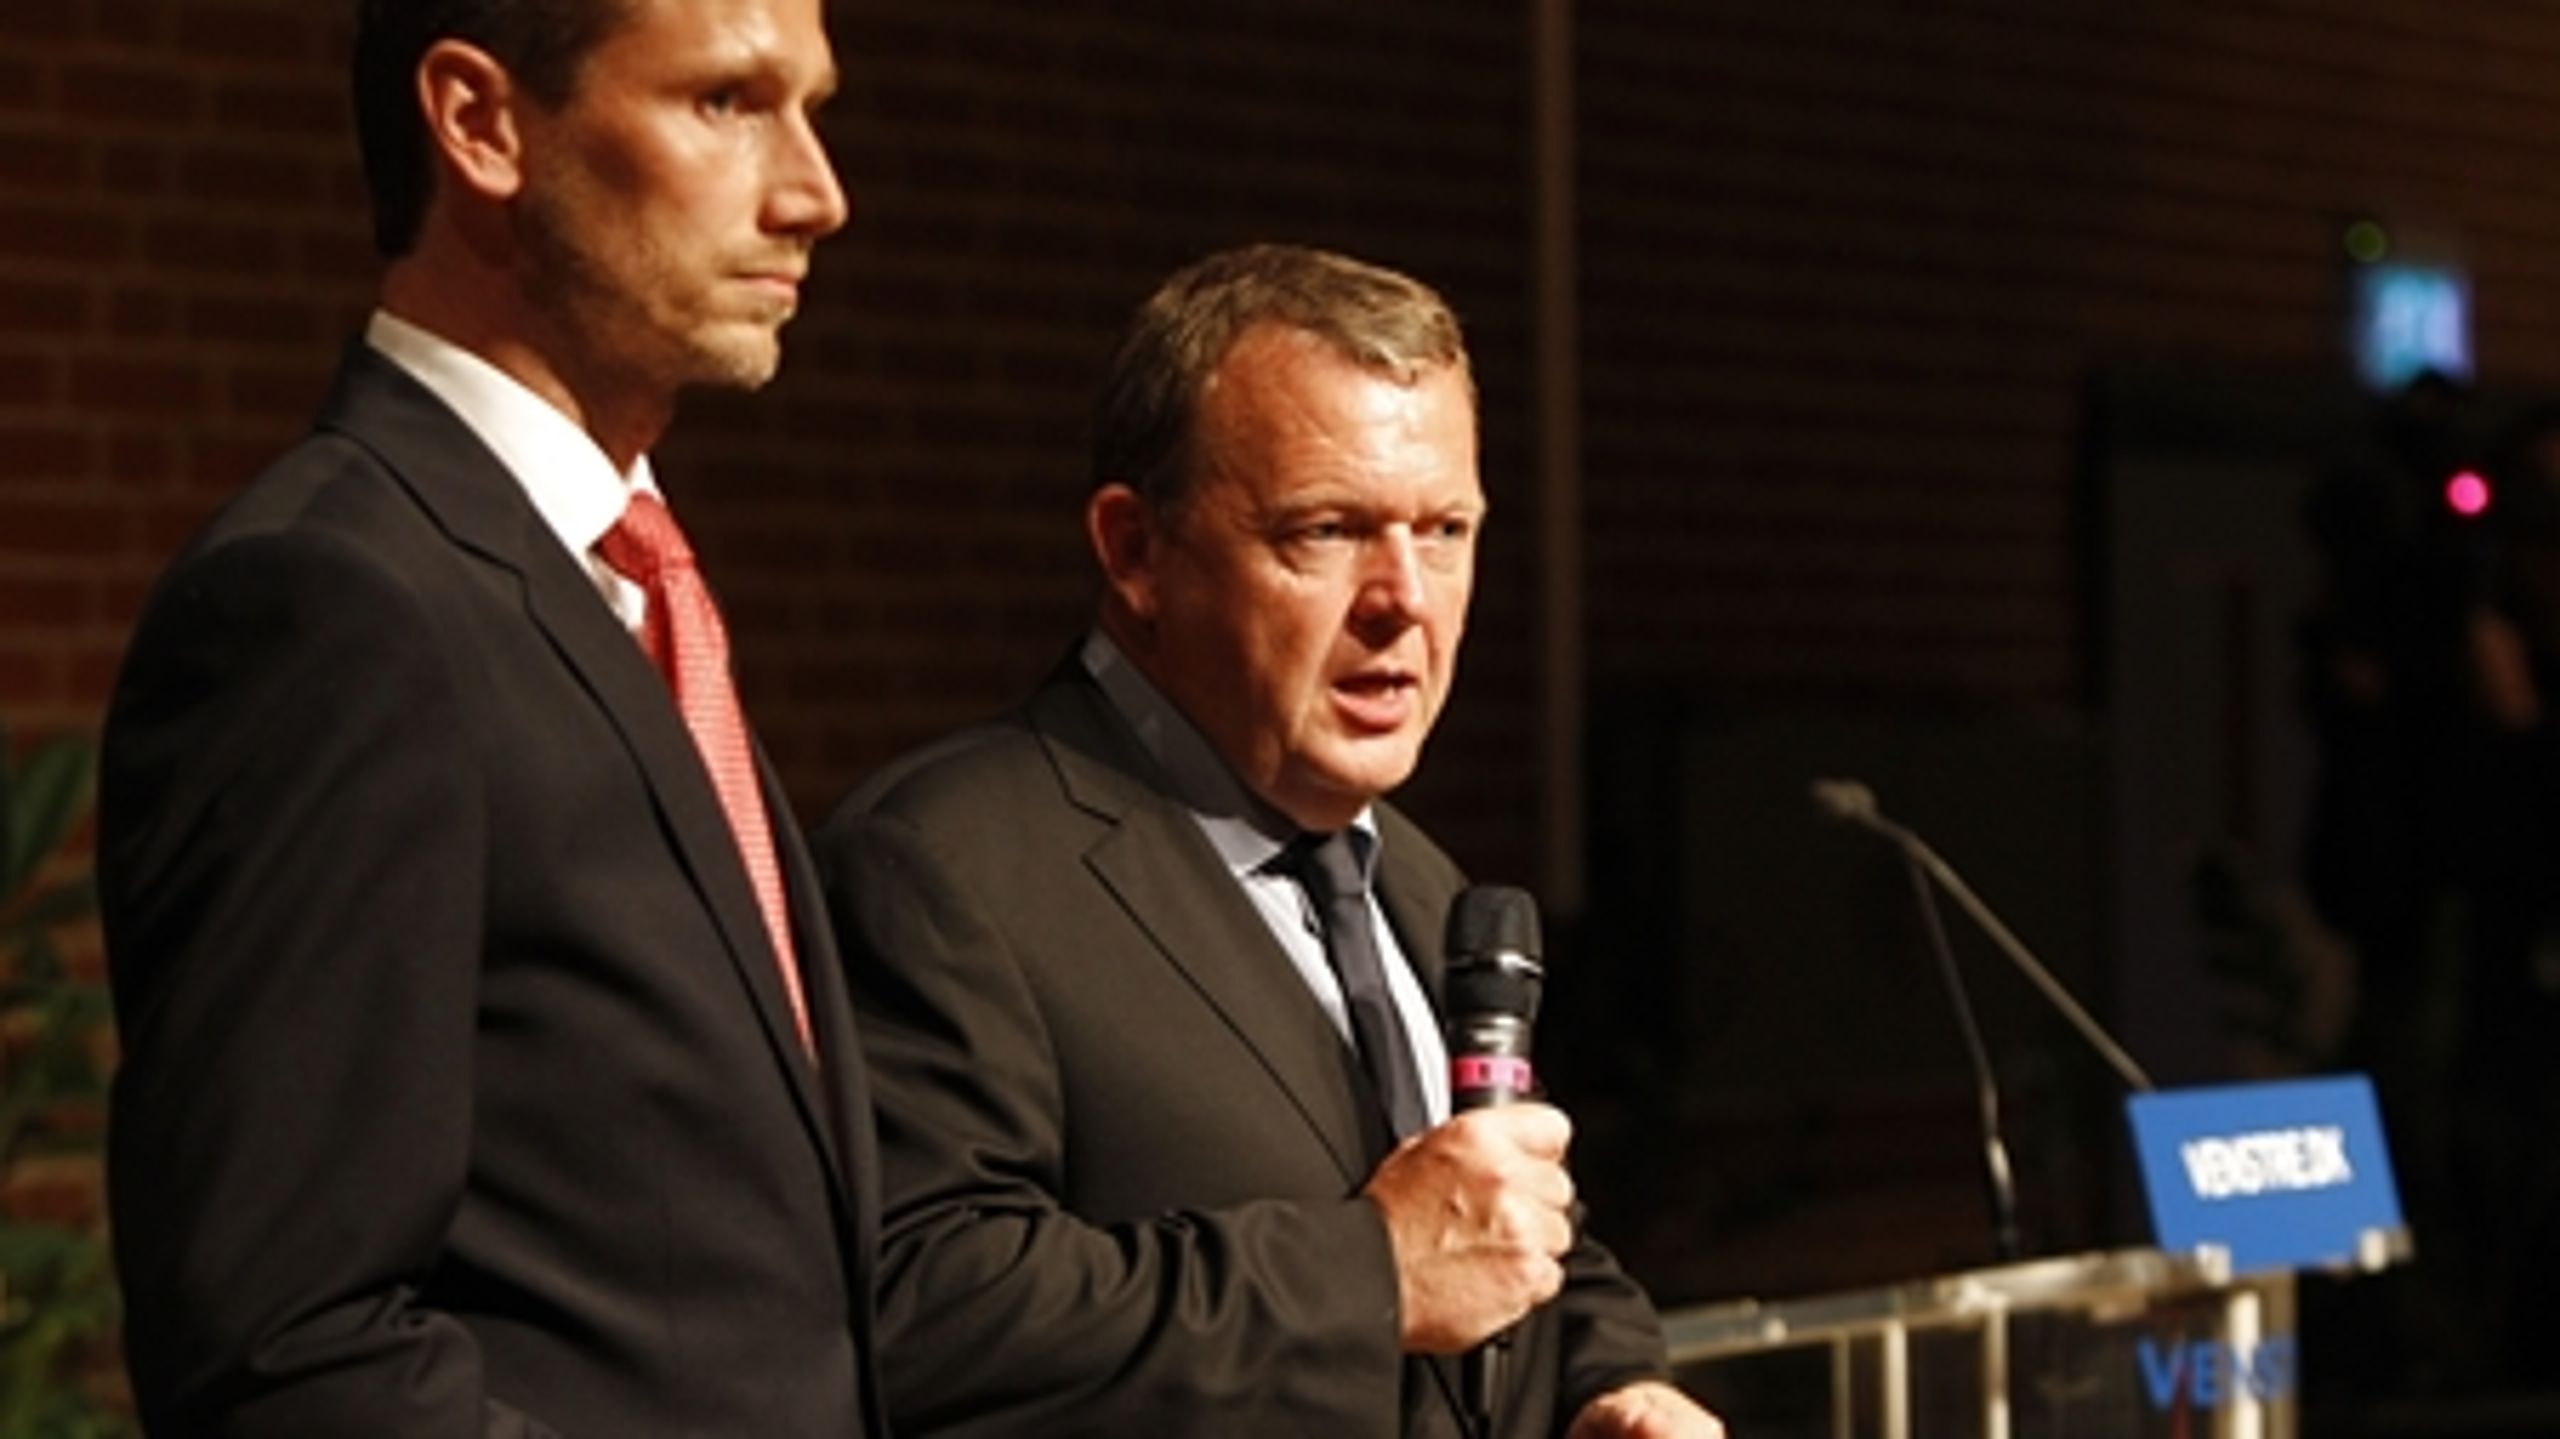 Efter et mange timer langt hovedbestyrelsesmøde i Odense holdt Lars Løkke og Kristian Jensen efter midnat et kort pressemøde. "Der er er sår, som skal heles," erkendte Løkke. 